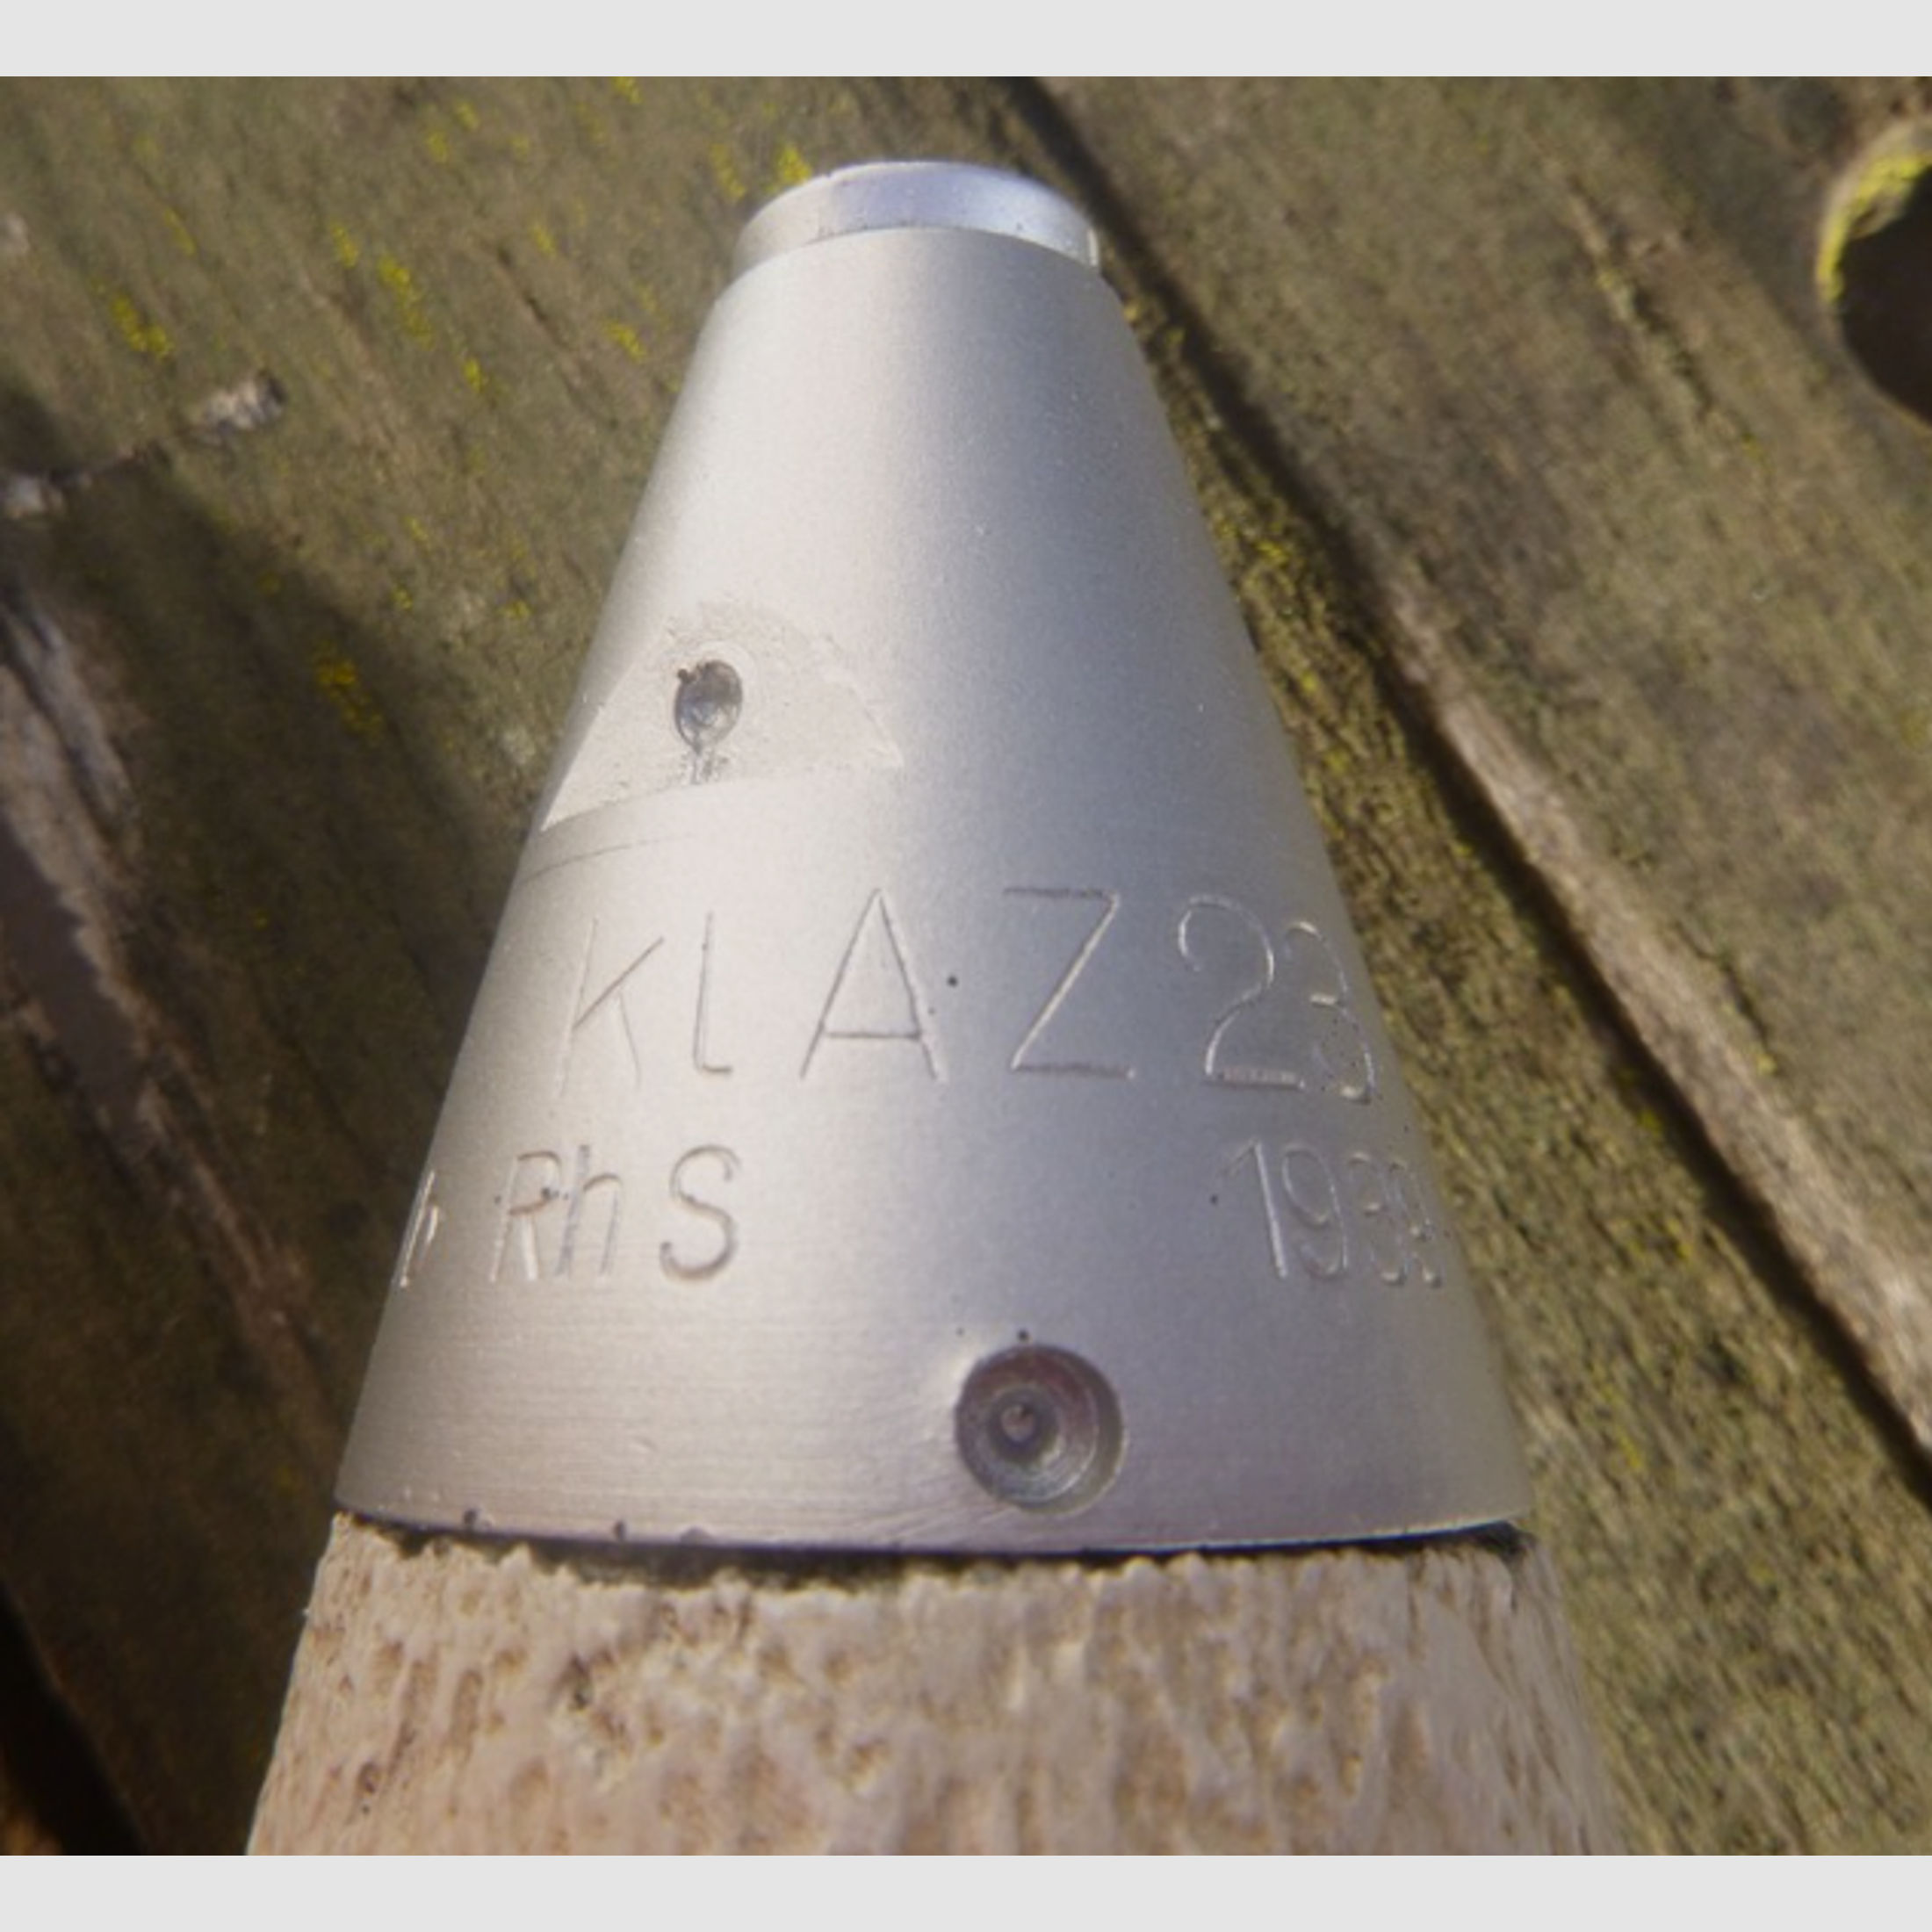 Zünder KLAZ23 7,5cm Pak und KWK, Wehrmacht, keine Granate, nicht k98, mp40,stg44